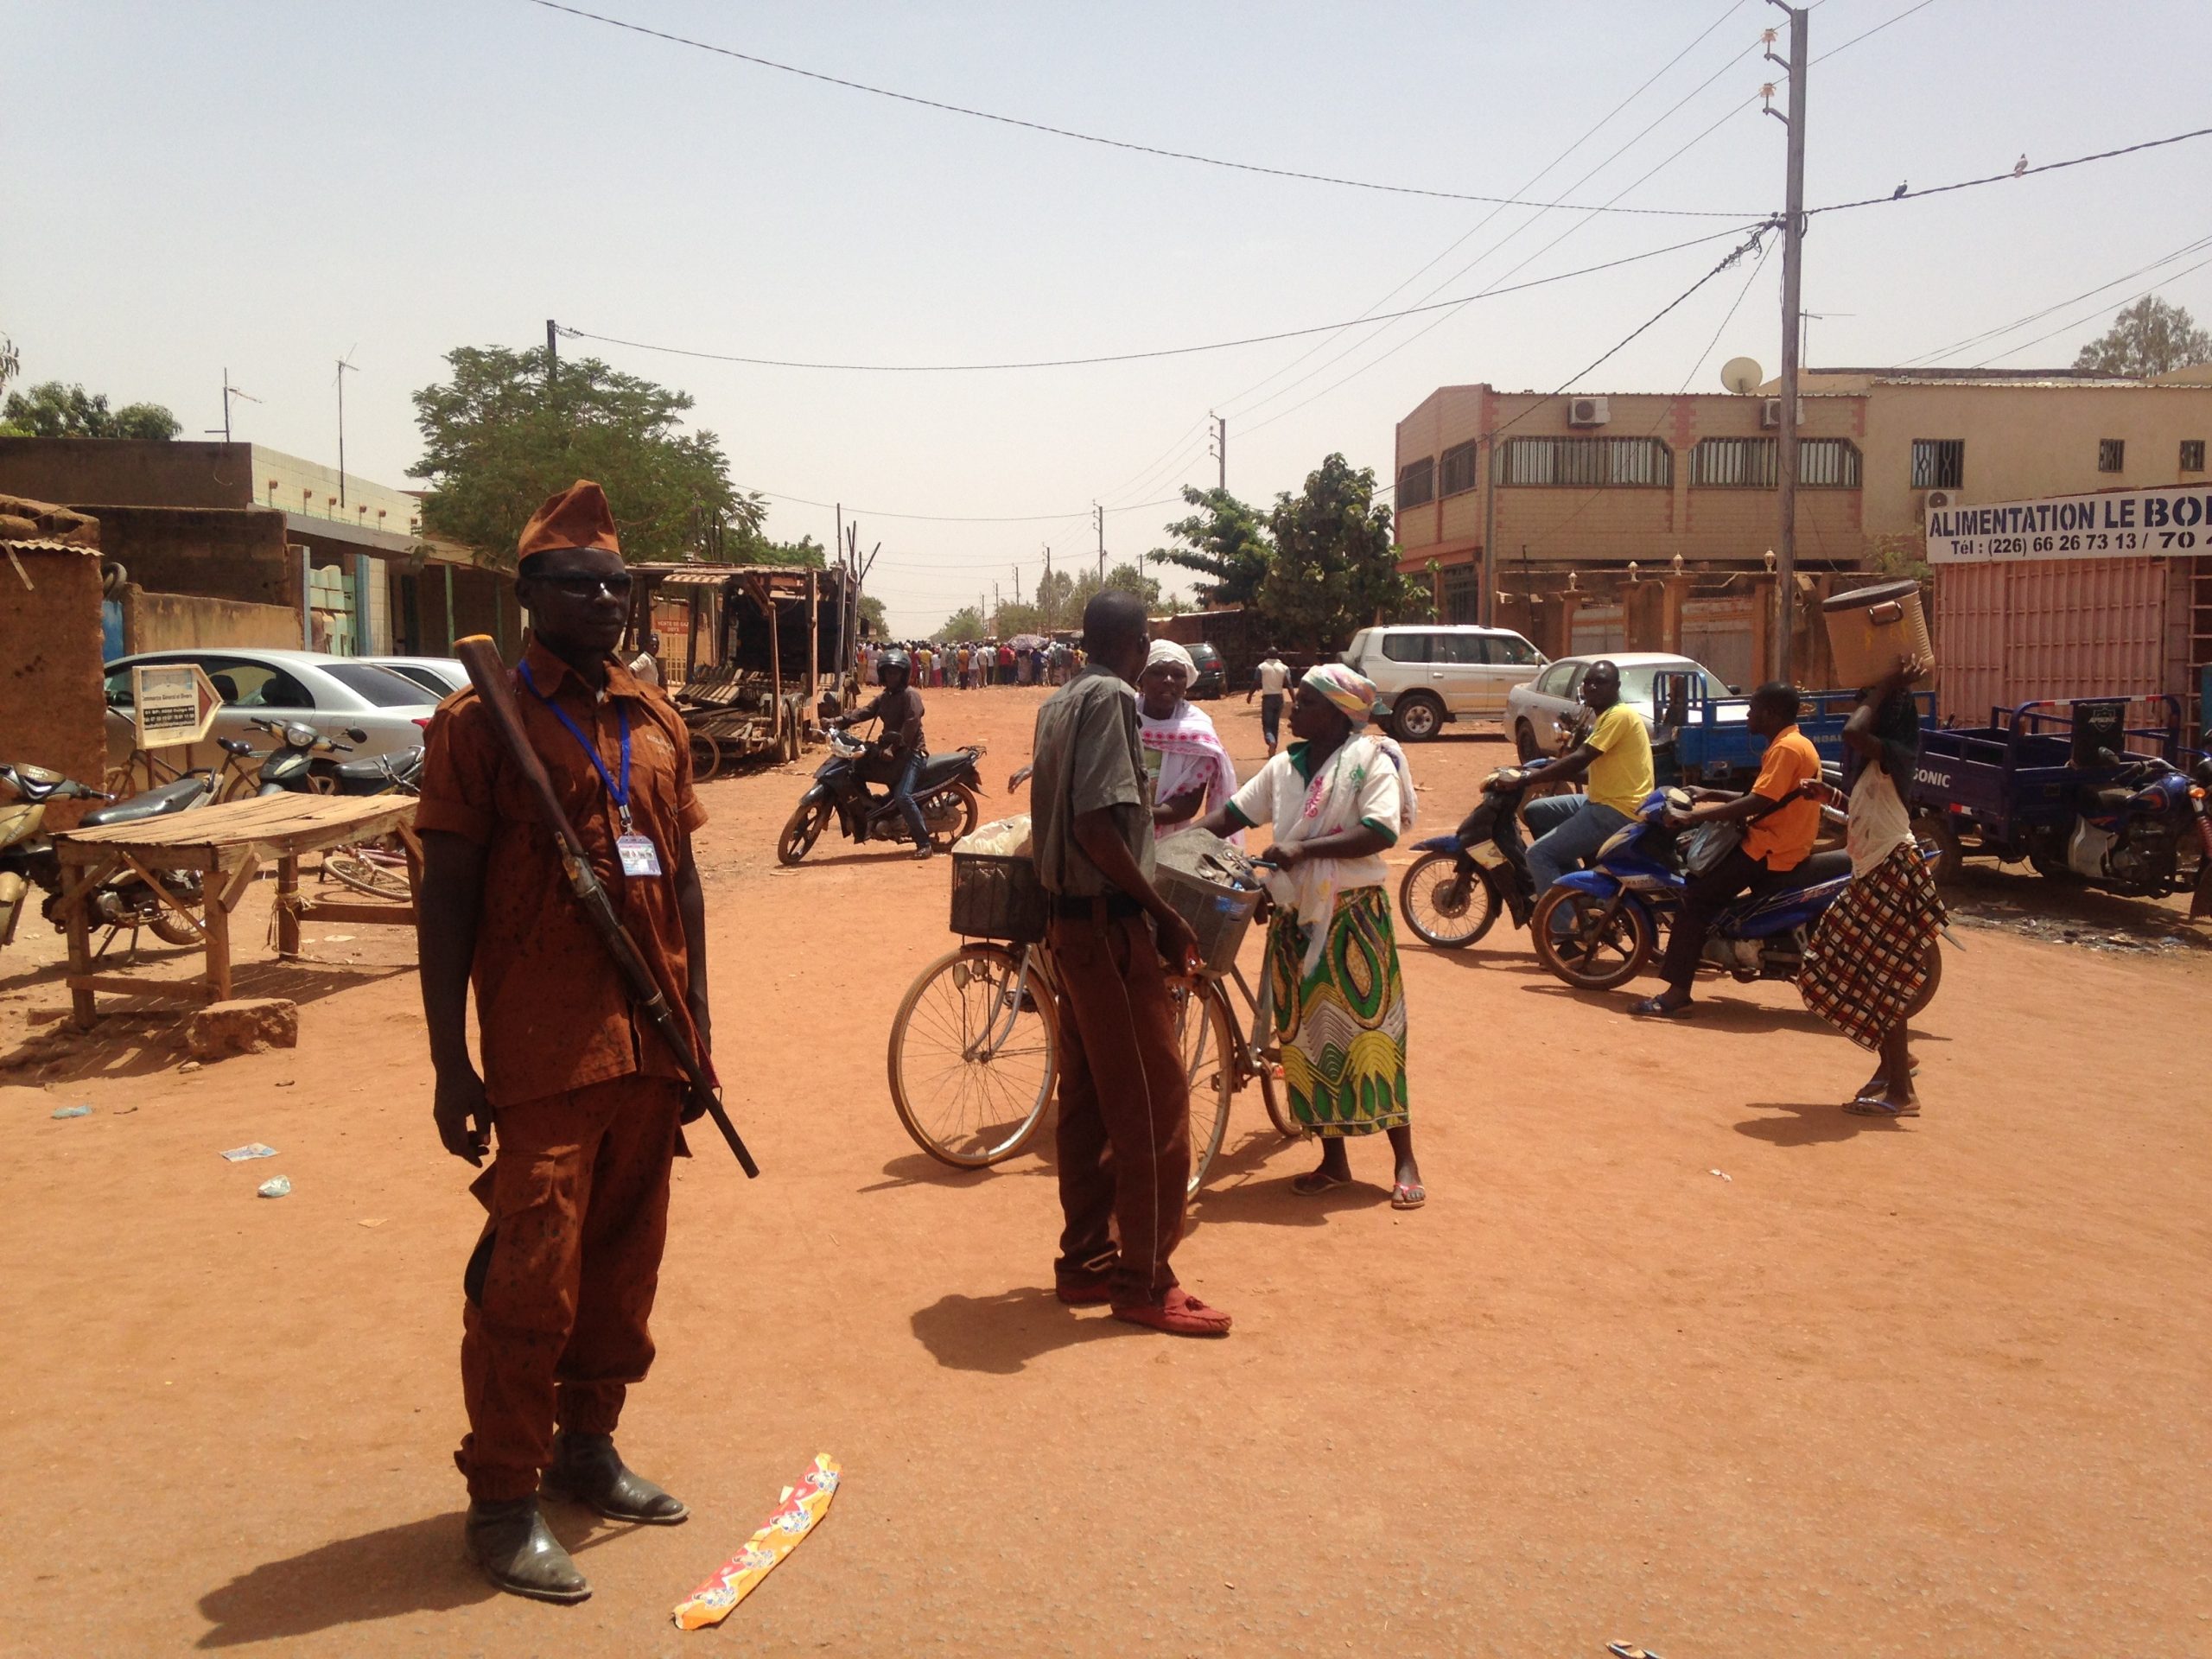 Mouvement d’autodéfense au Burkina Faso : Diffusion et structuration des groupes Koglweogo